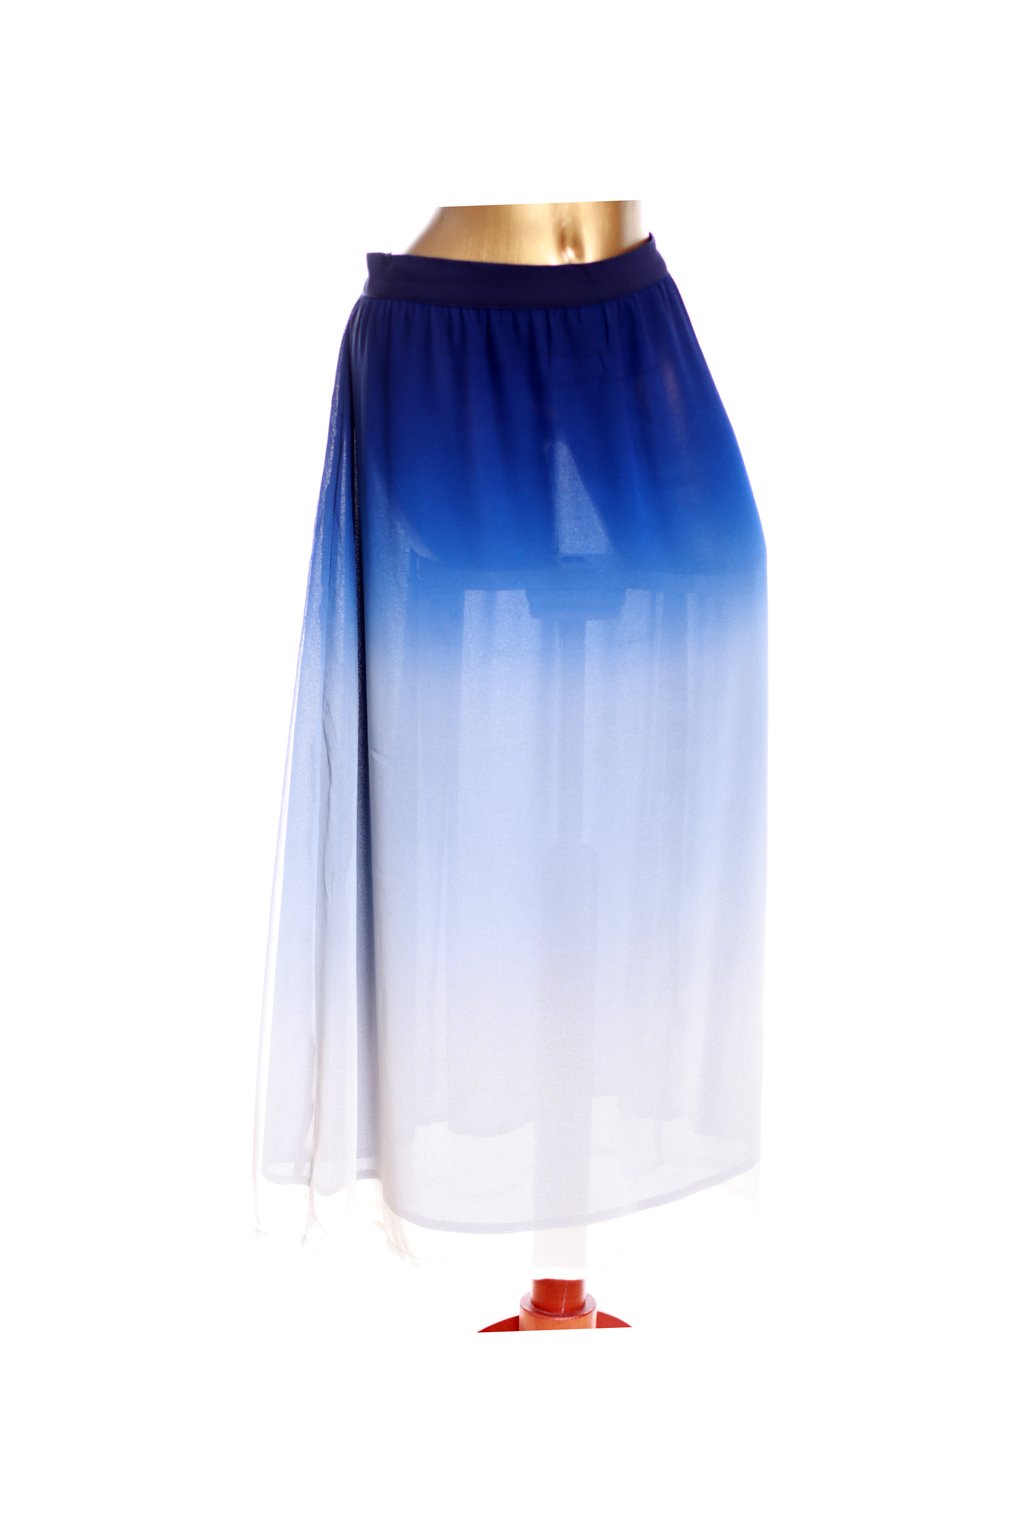 Dámská modro-bílá sukně / NEXT / XXL (44) / ANGLIE